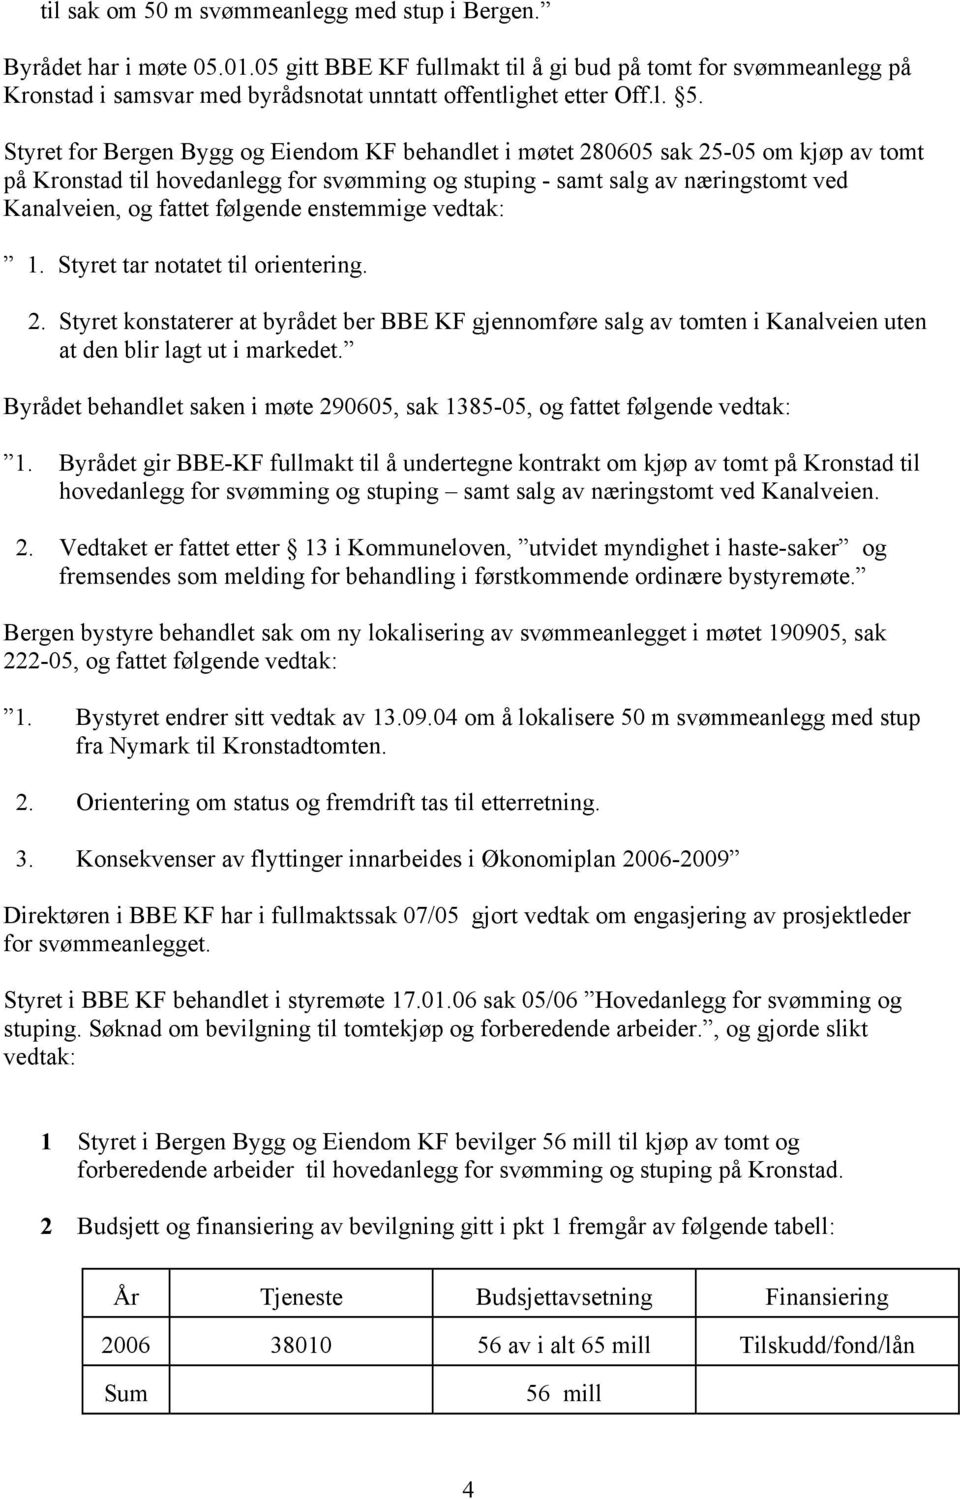 Styret for Bergen Bygg og Eiendom KF behandlet i møtet 280605 sak 25-05 om kjøp av tomt på Kronstad til hovedanlegg for svømming og stuping - samt salg av næringstomt ved Kanalveien, og fattet